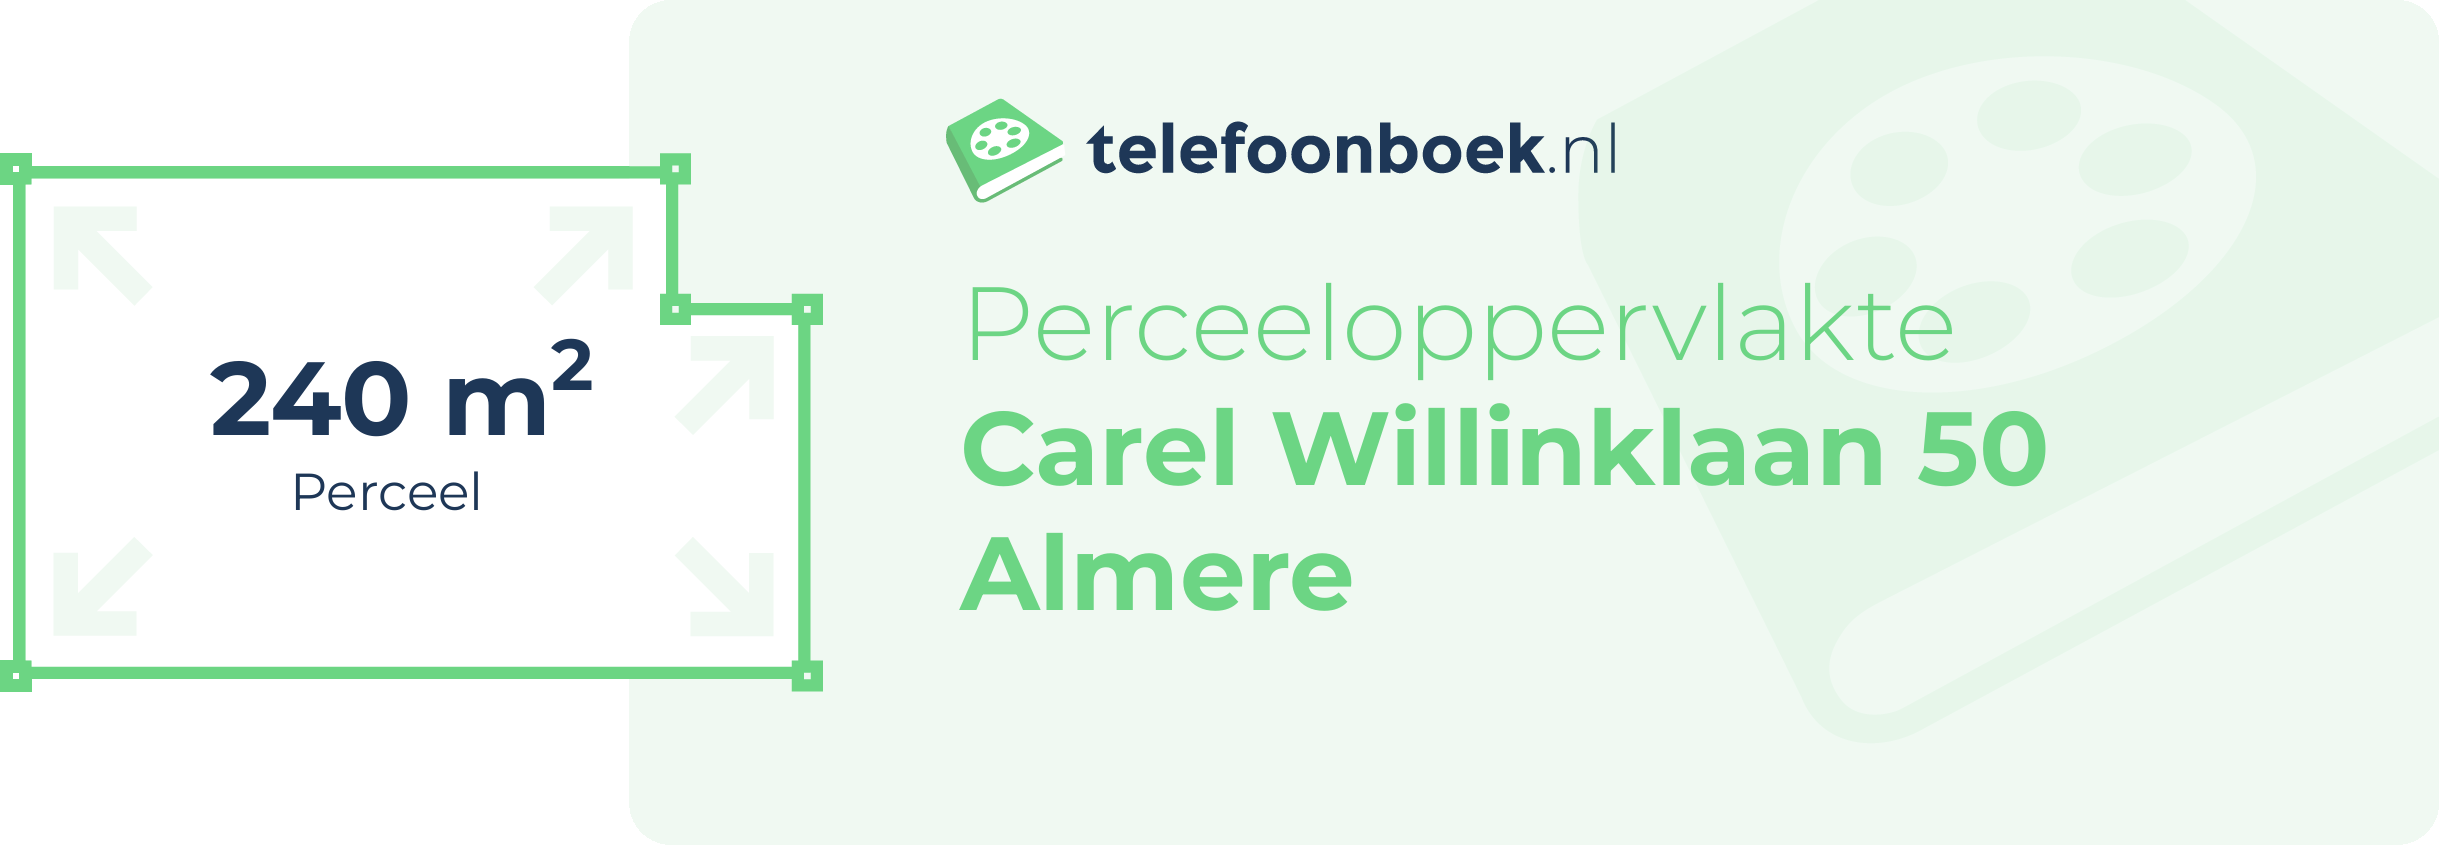 Perceeloppervlakte Carel Willinklaan 50 Almere